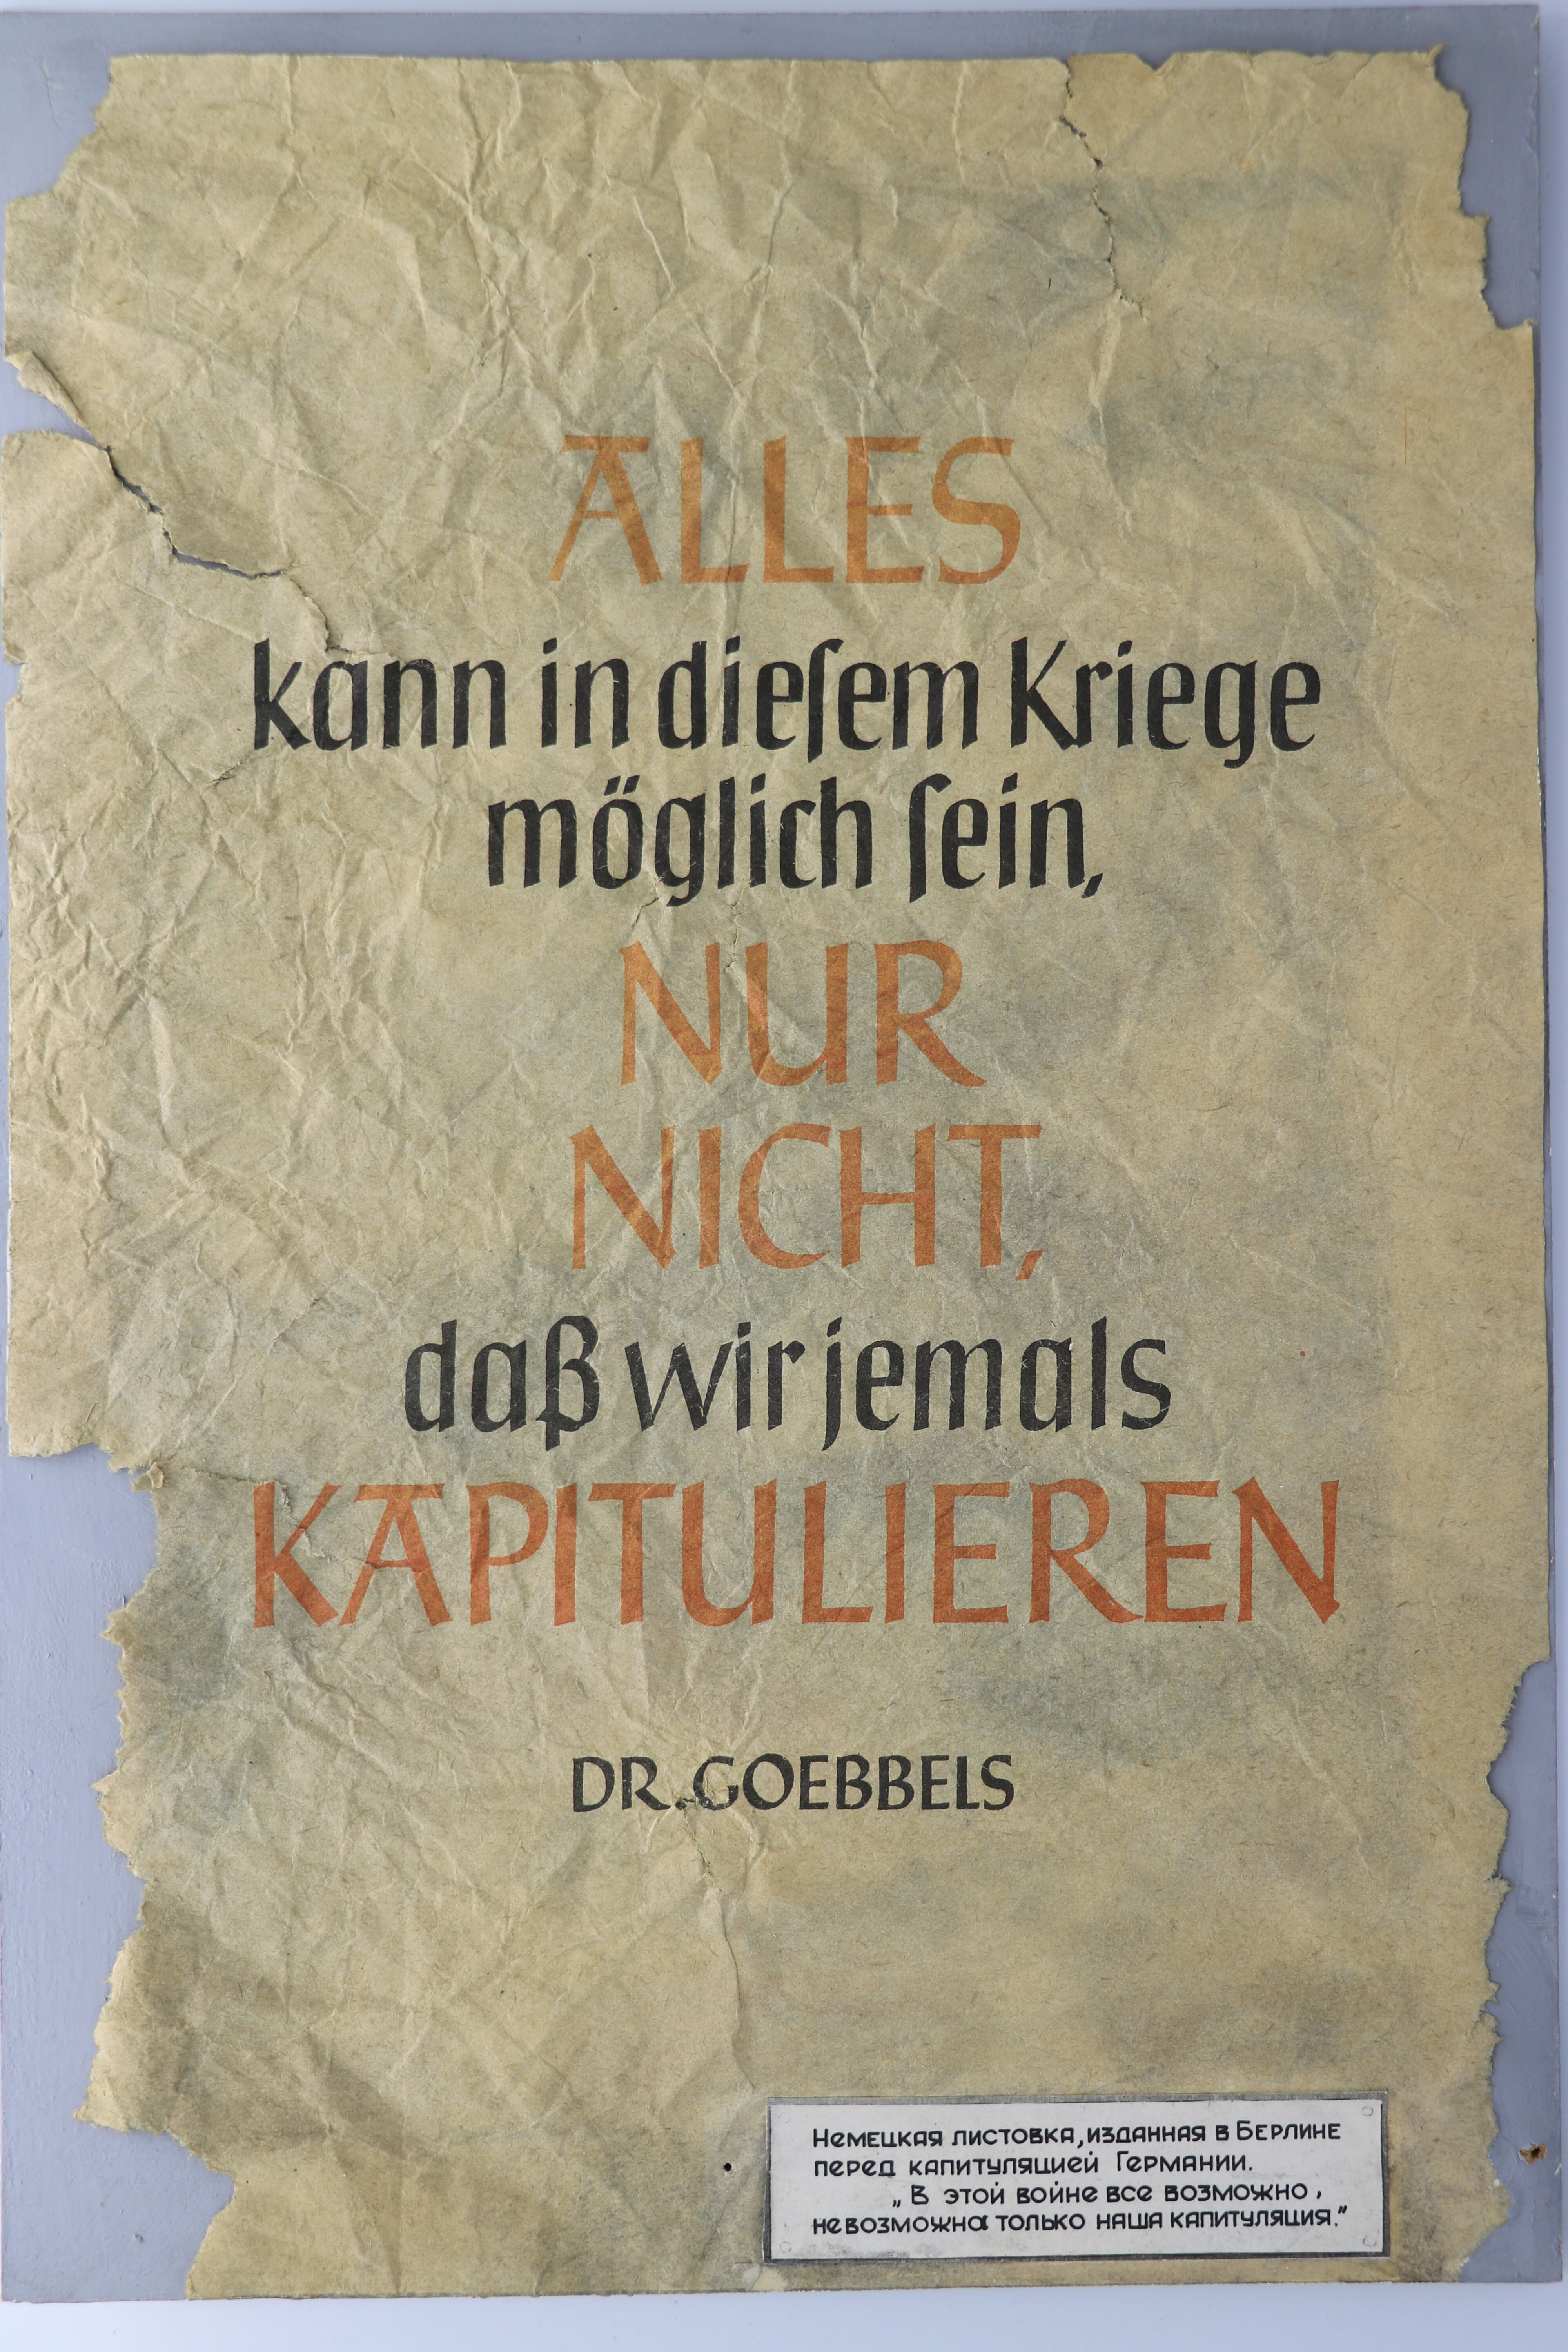 Plakat, deutsch: "Alles kann in diesem Kriege möglich sein ..." (Museum Berlin-Karlshorst CC BY-NC-SA)